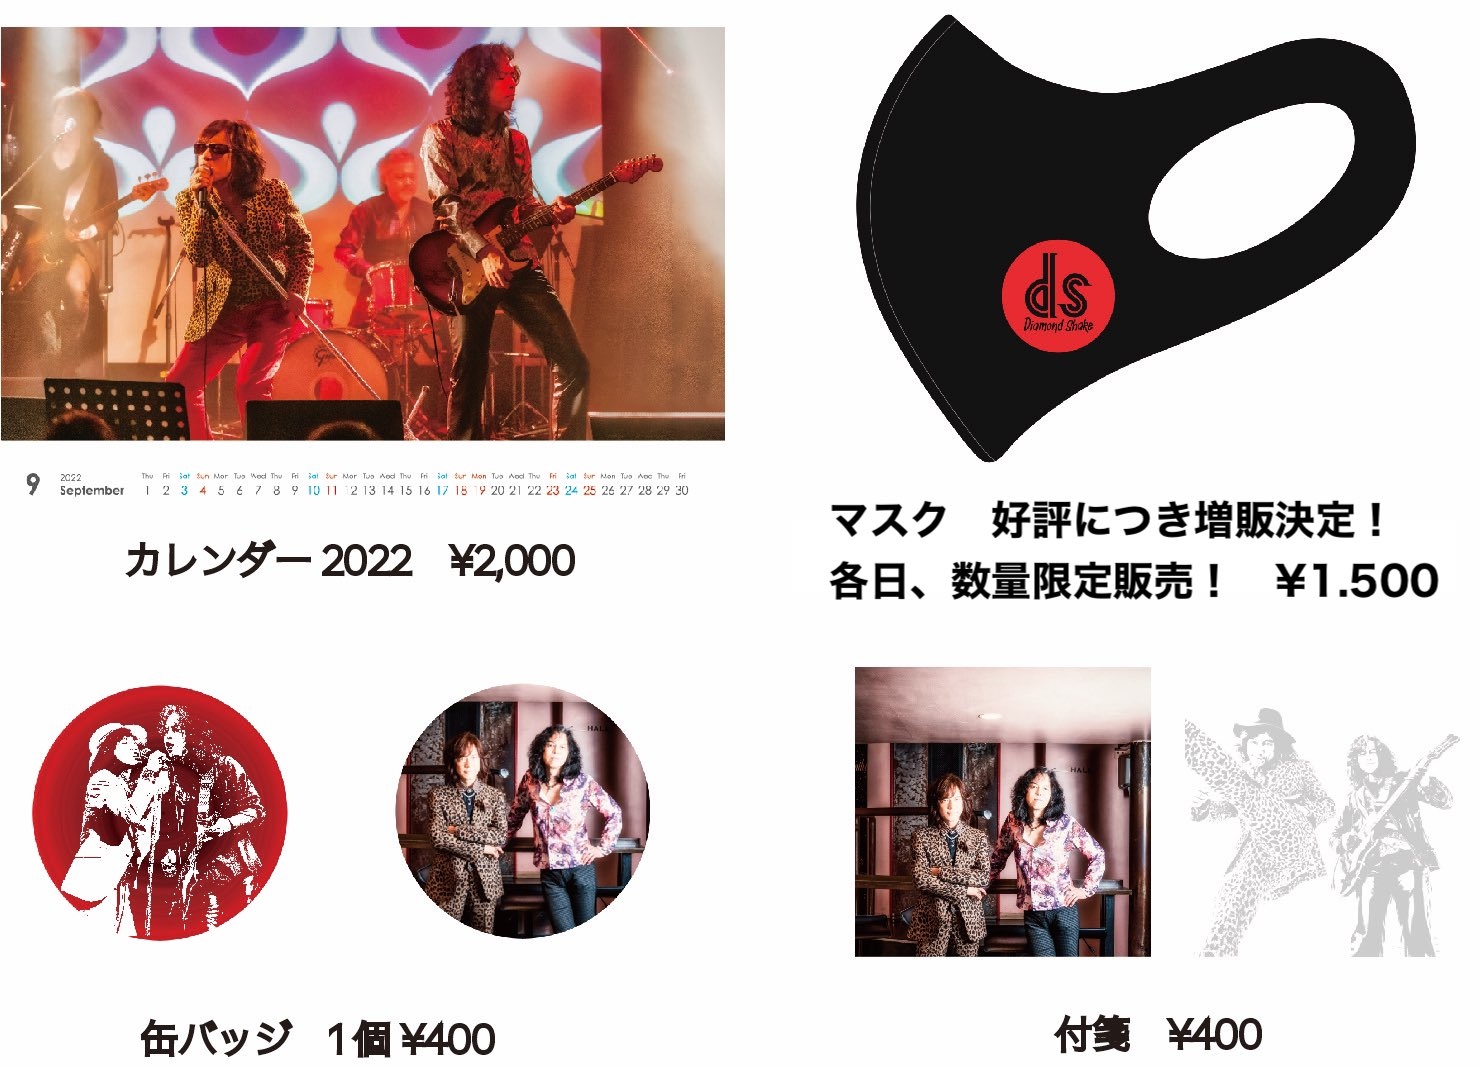 ダイアモンド ユカイ Sun Music Group Official Web Site